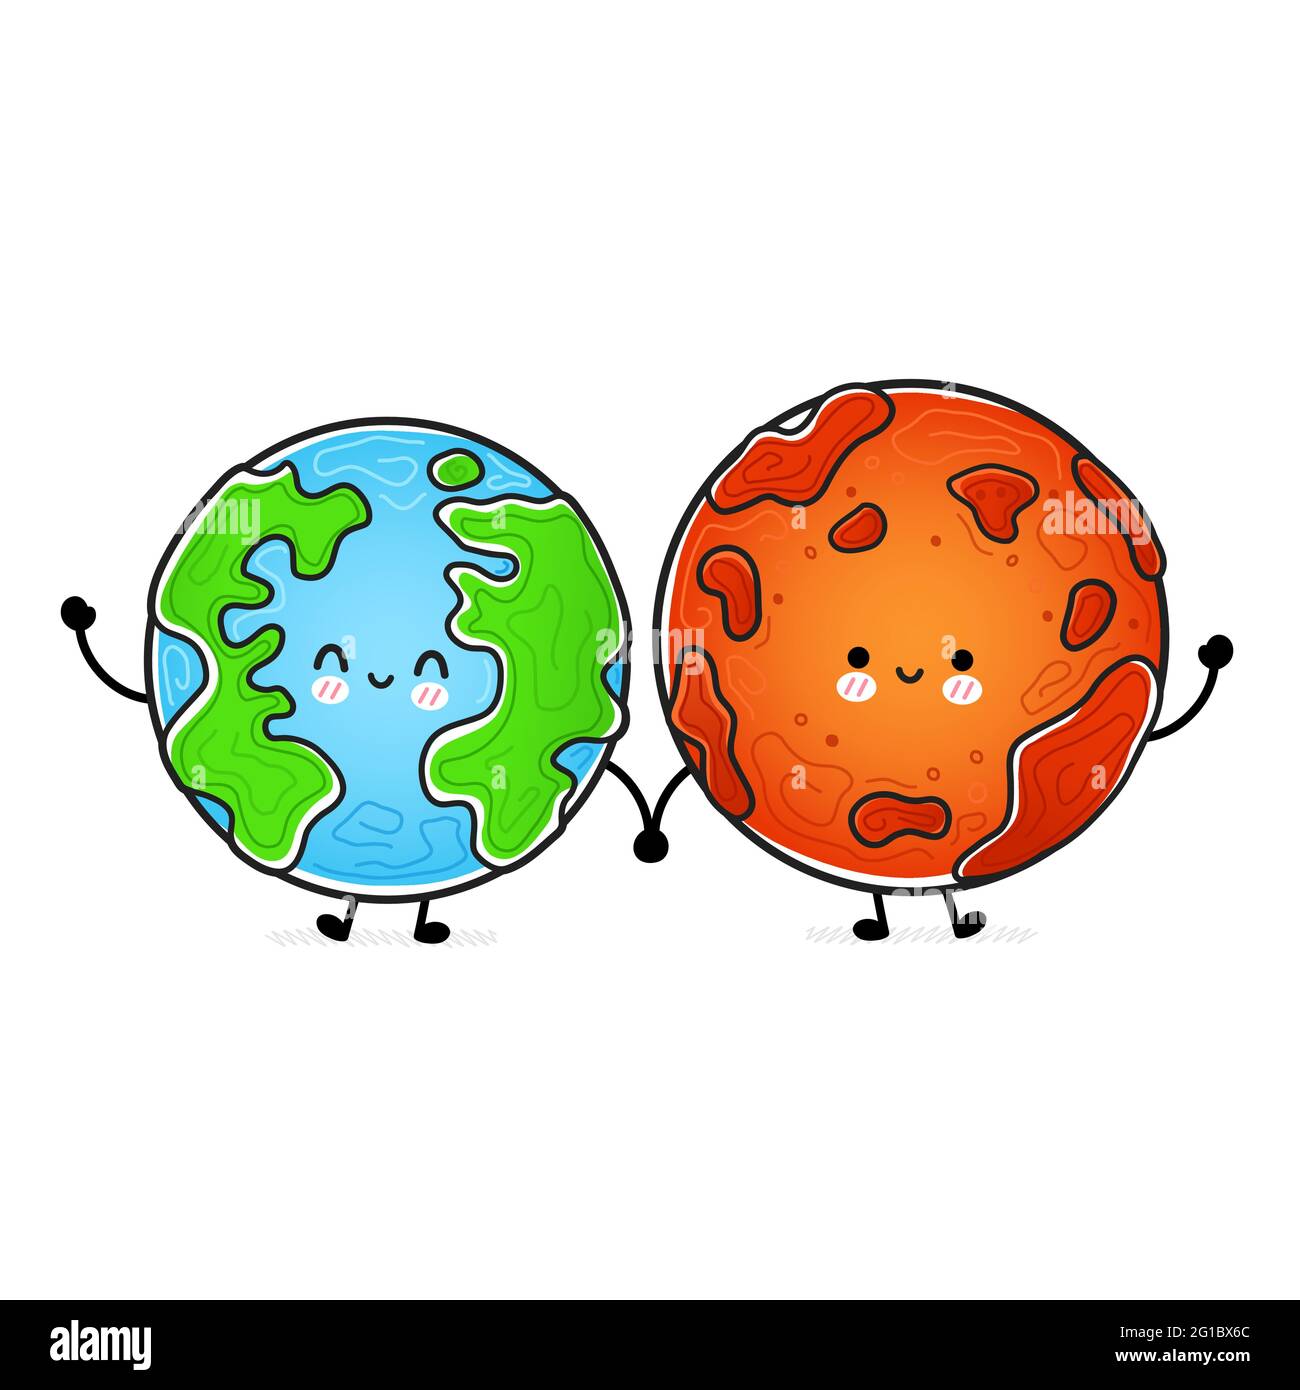 Pegatina Redonda Sol y planetas del ilustracion del kawaii de la